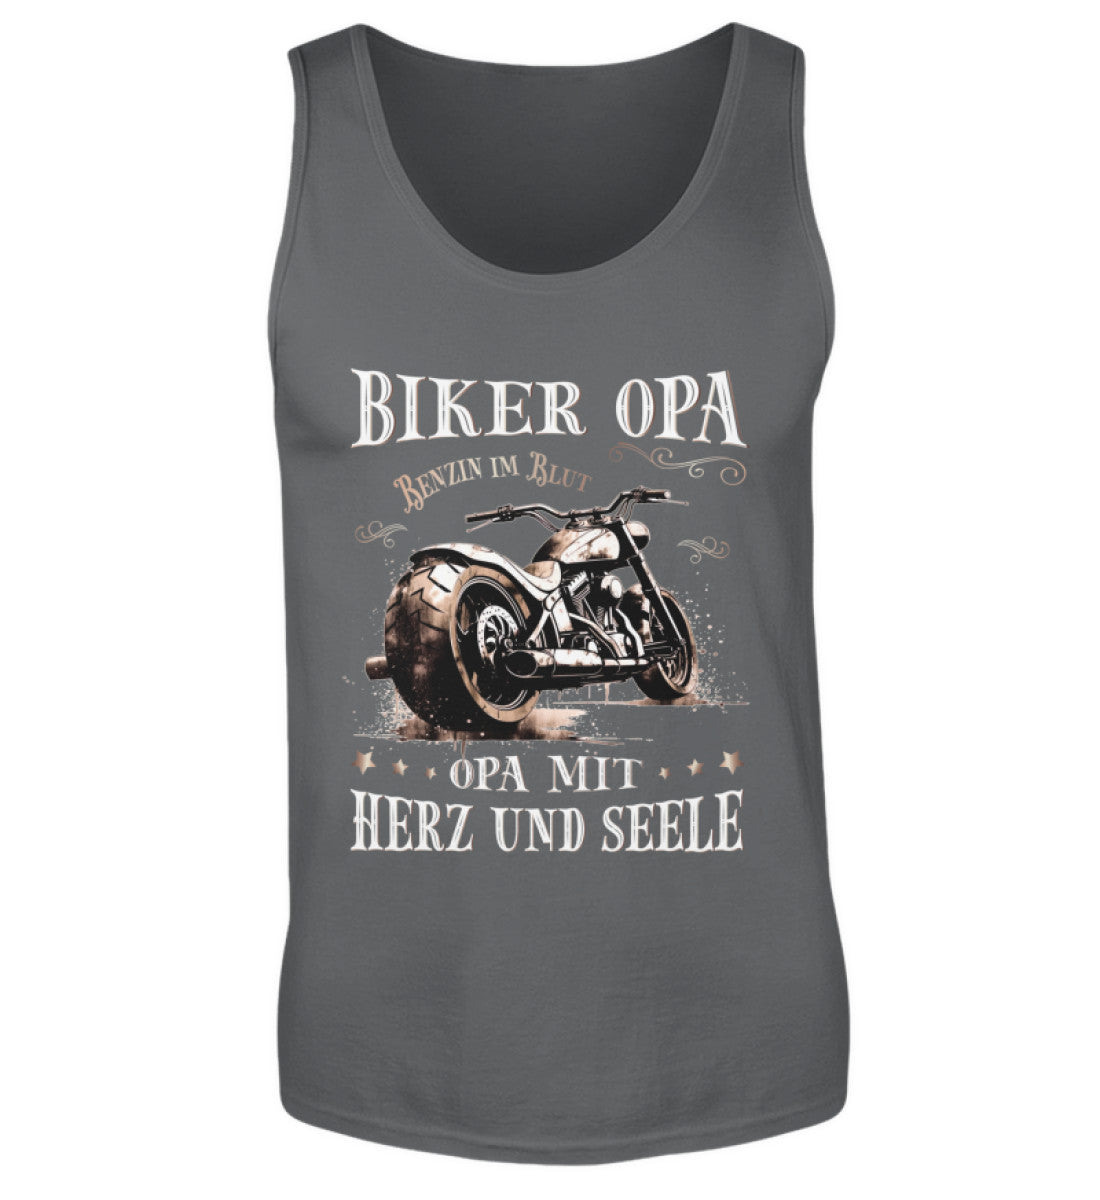 Ein Biker Tanktop für Motorradfahrer von Wingbikers mit dem Aufdruck, Biker Opa - Benzin im Blut - Opa mit Herz und Seele, in dunkelgrau.